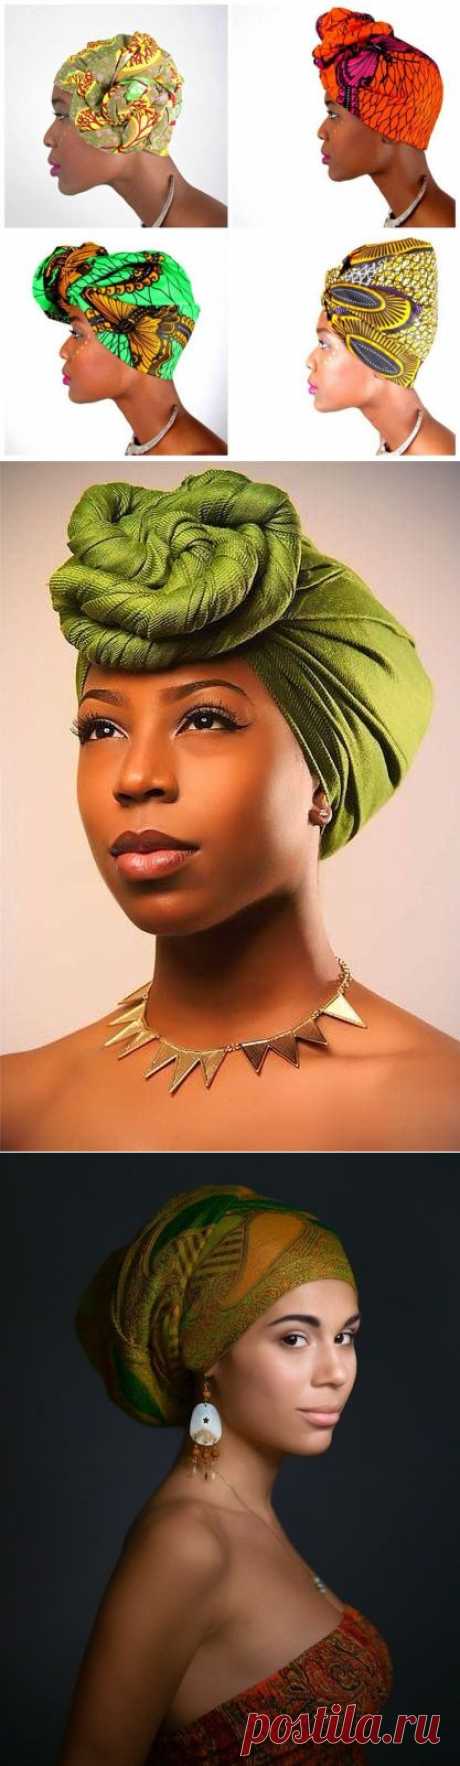 &gt;African fashion: головные уборы Африканского материка